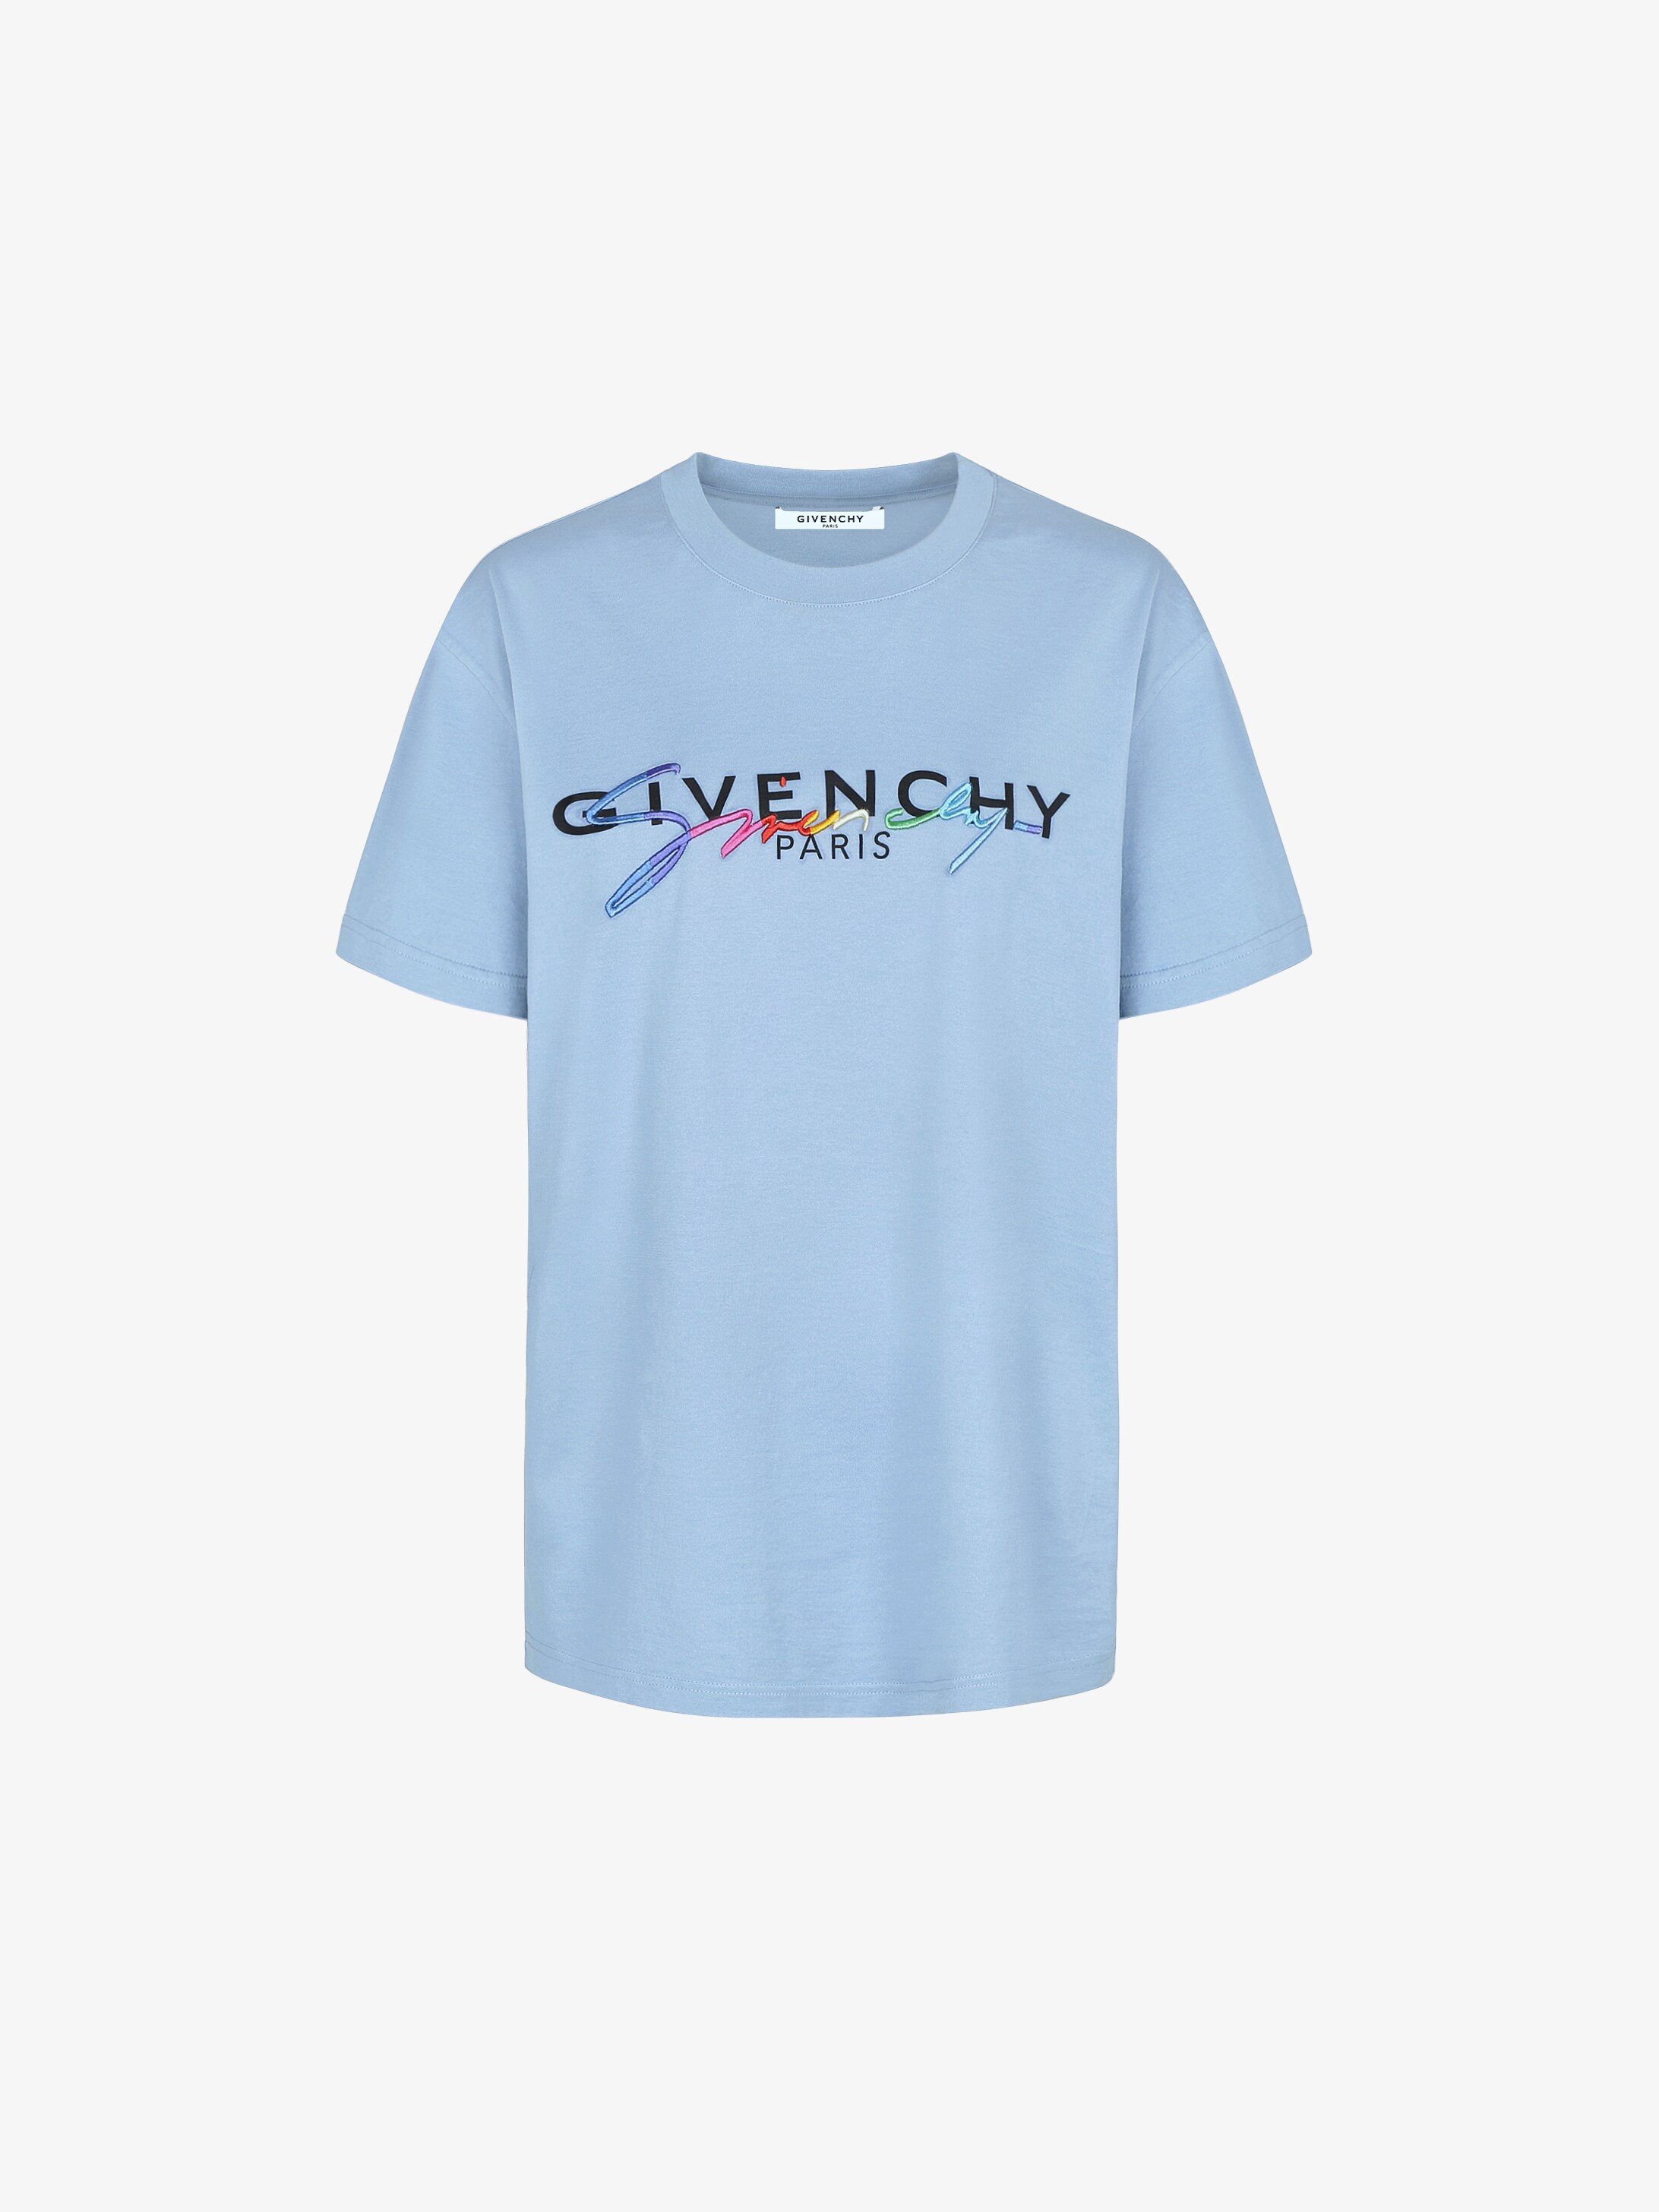 T-shirt oversized GIVENCHY signature 